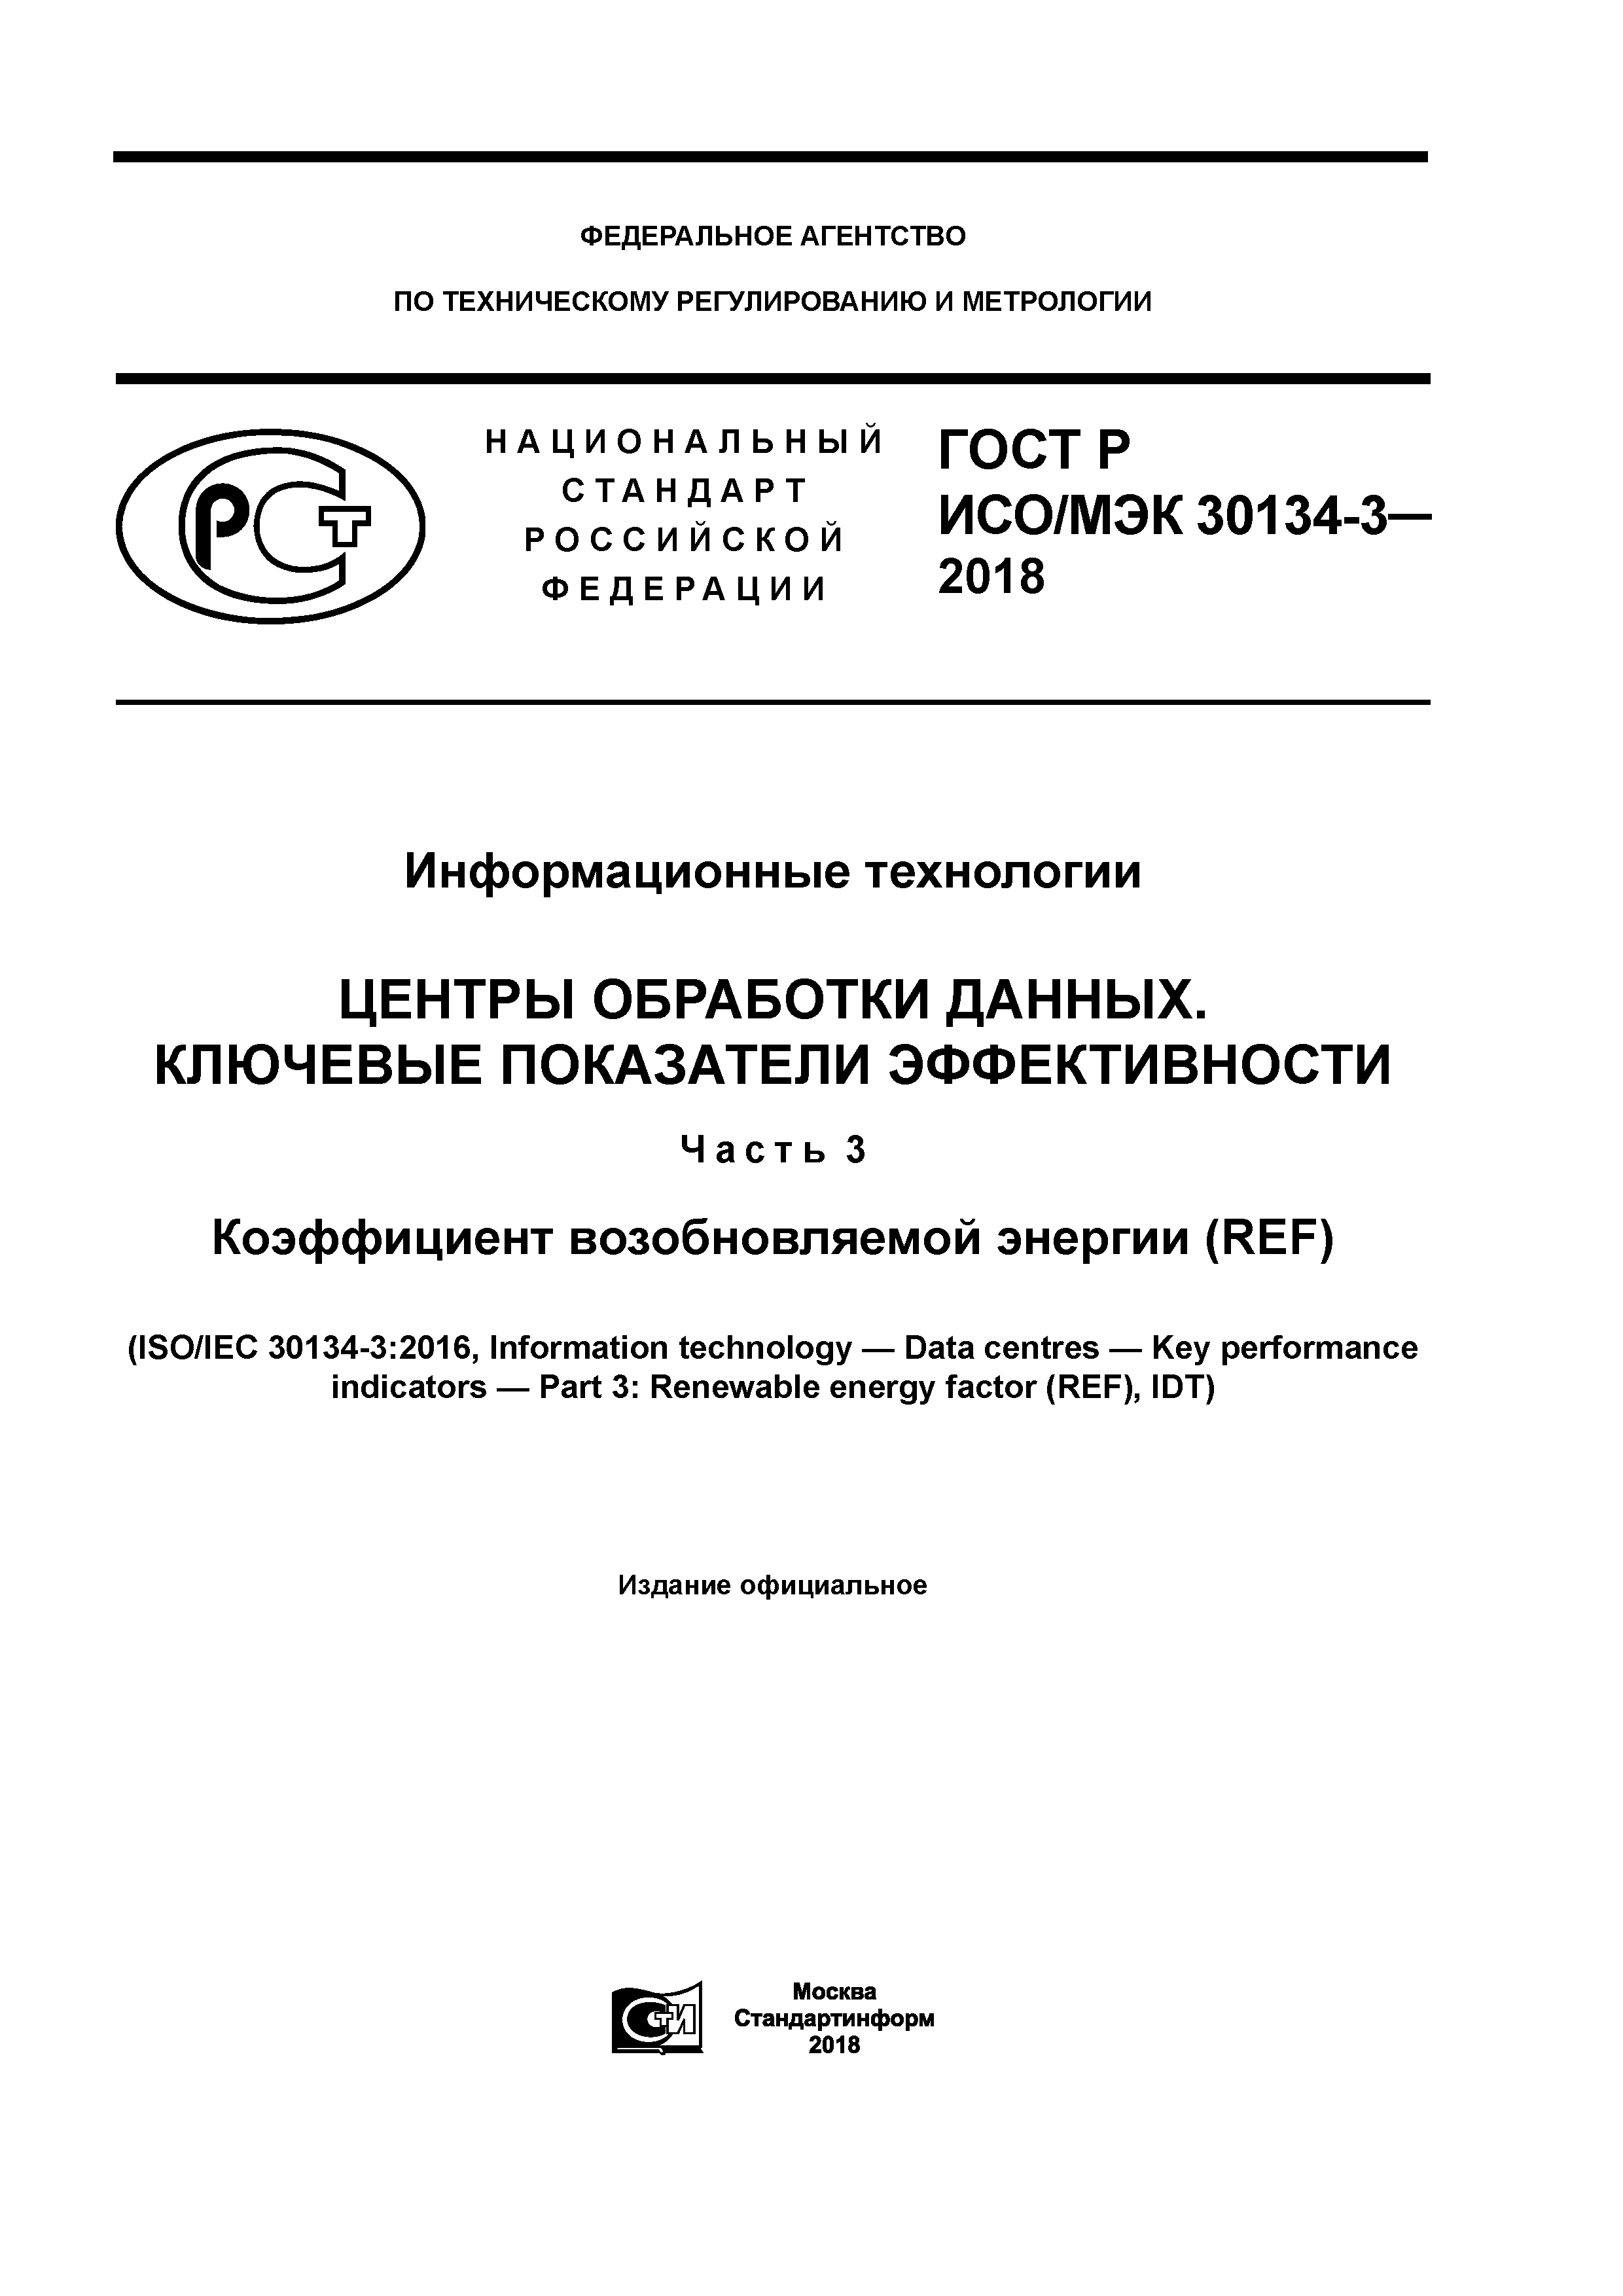 ГОСТ Р ИСО/МЭК 30134-3-2018